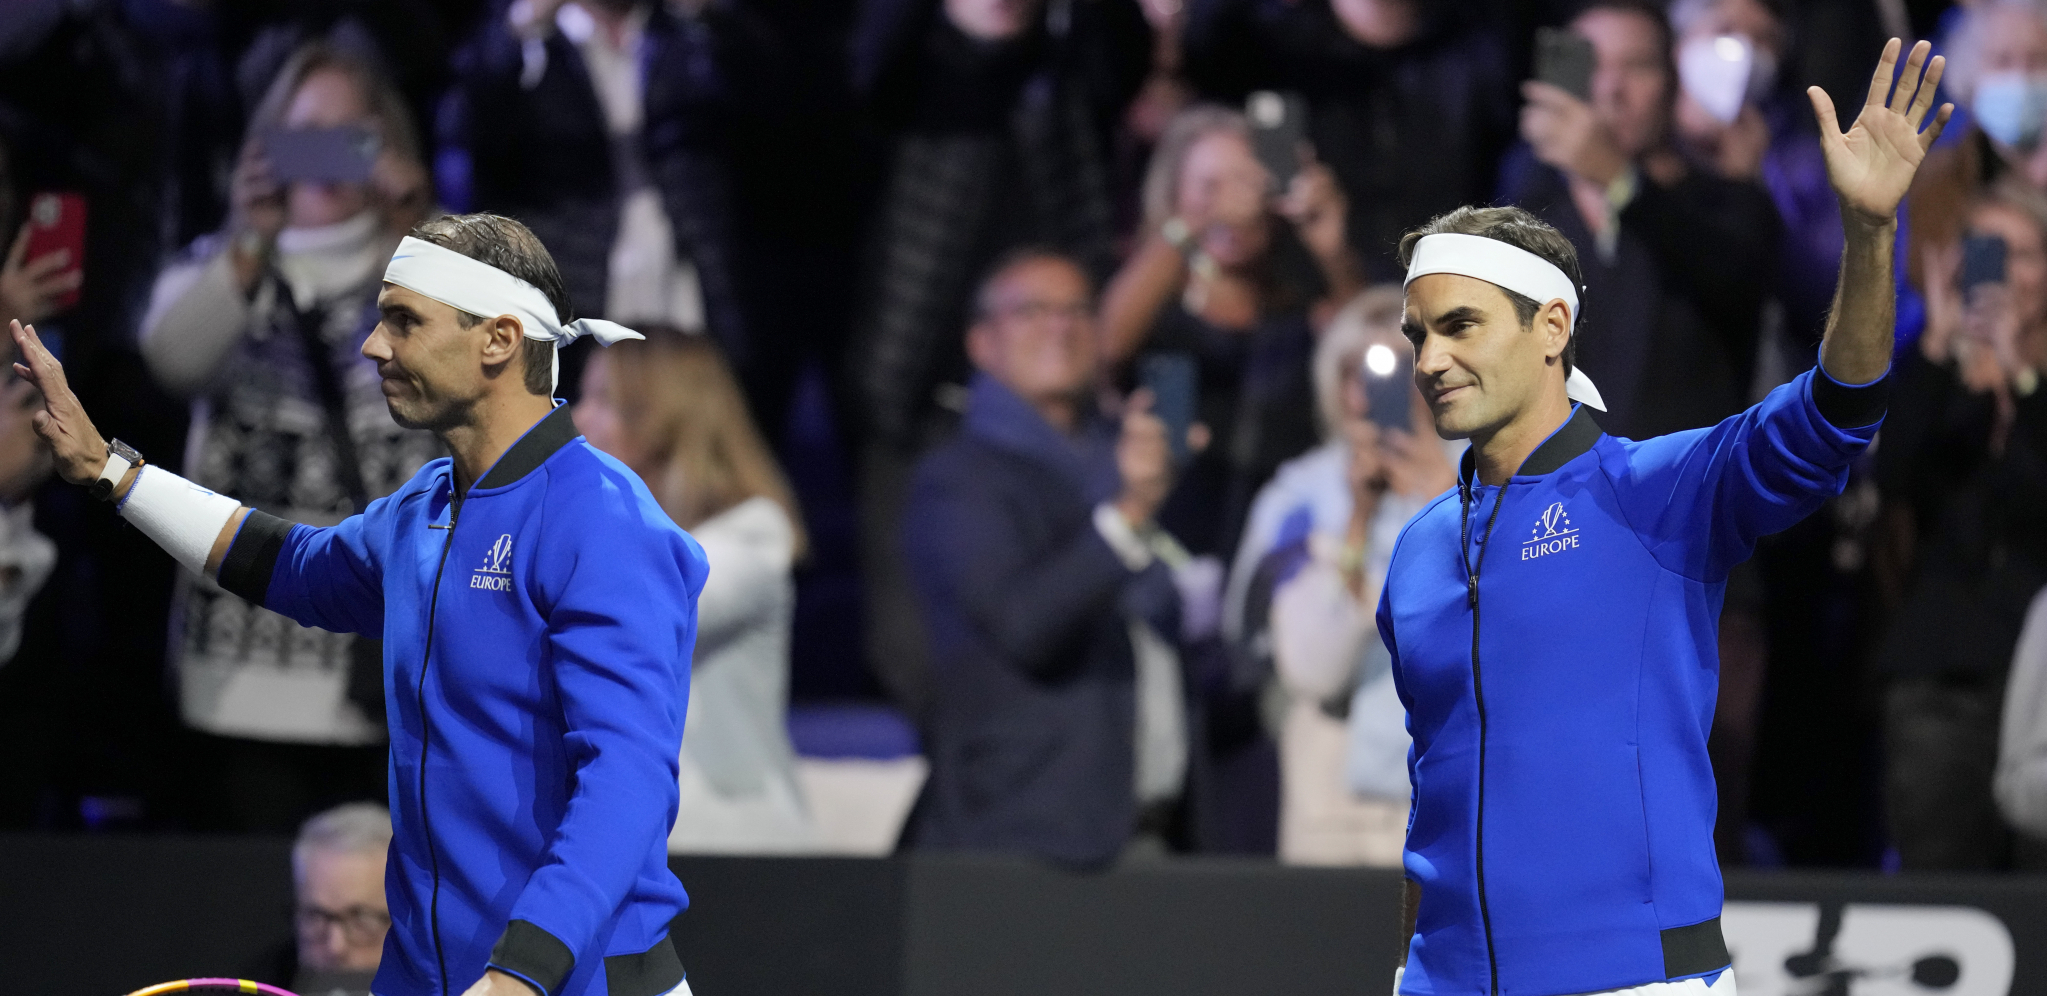 KRAJ JEDNE ERE Rodžer Federer odigrao poslednji meč i oprostio se od tenisa (FOTO/VIDEO)